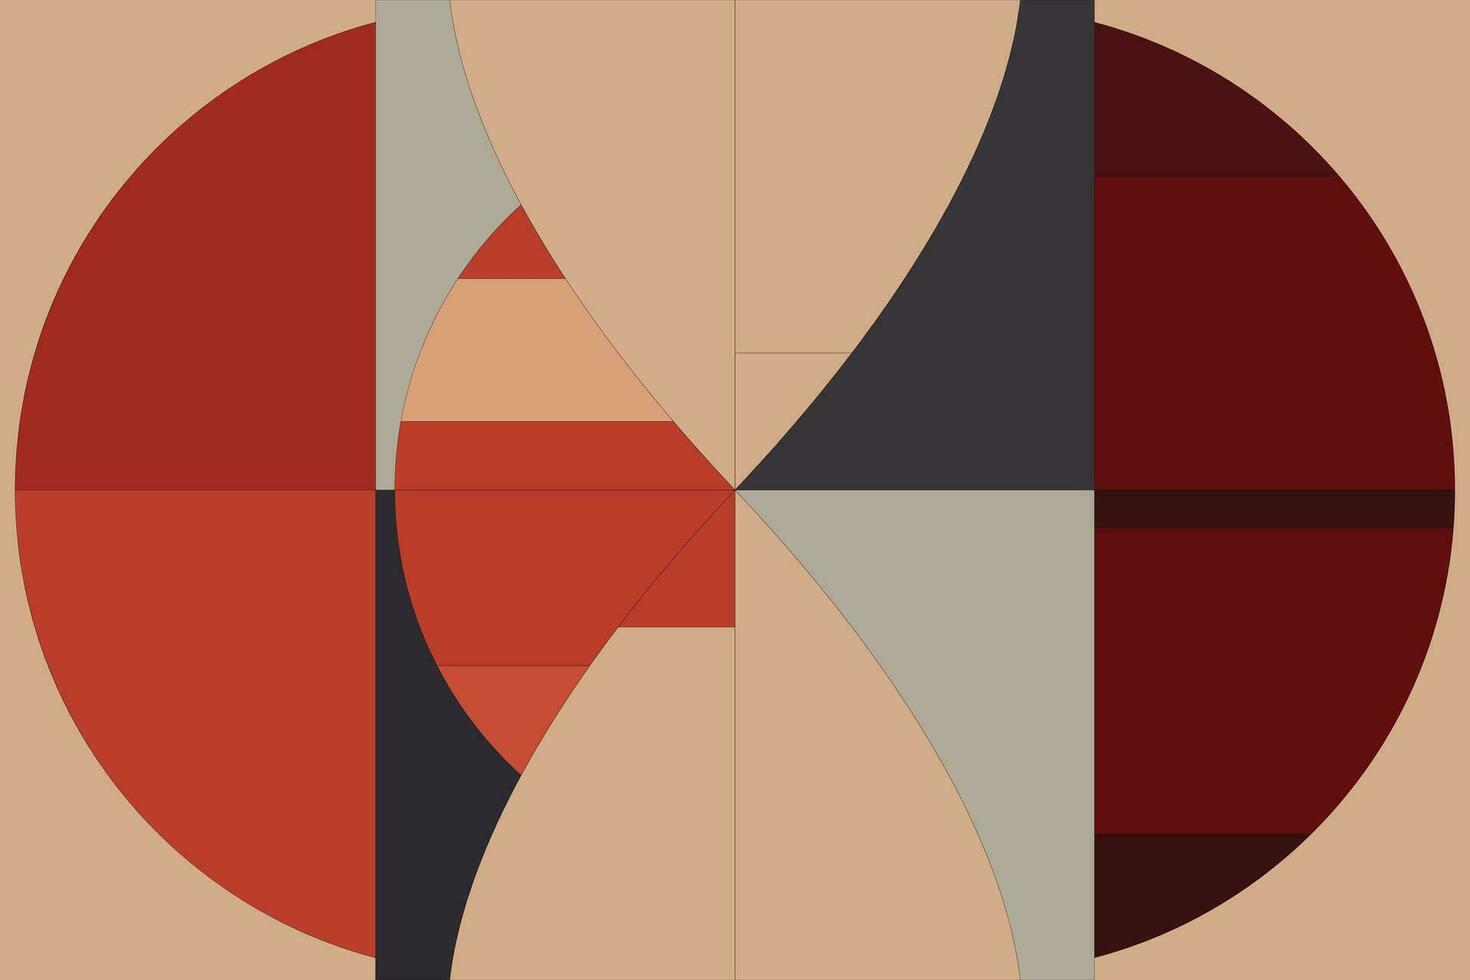 moderno geométrico formas patrones, sin costura vector ilustración. modelo diseños con moderno geométrico formas lata ser impreso como un antecedentes imagen o usado para alfombras, alfombras, o textil tela.